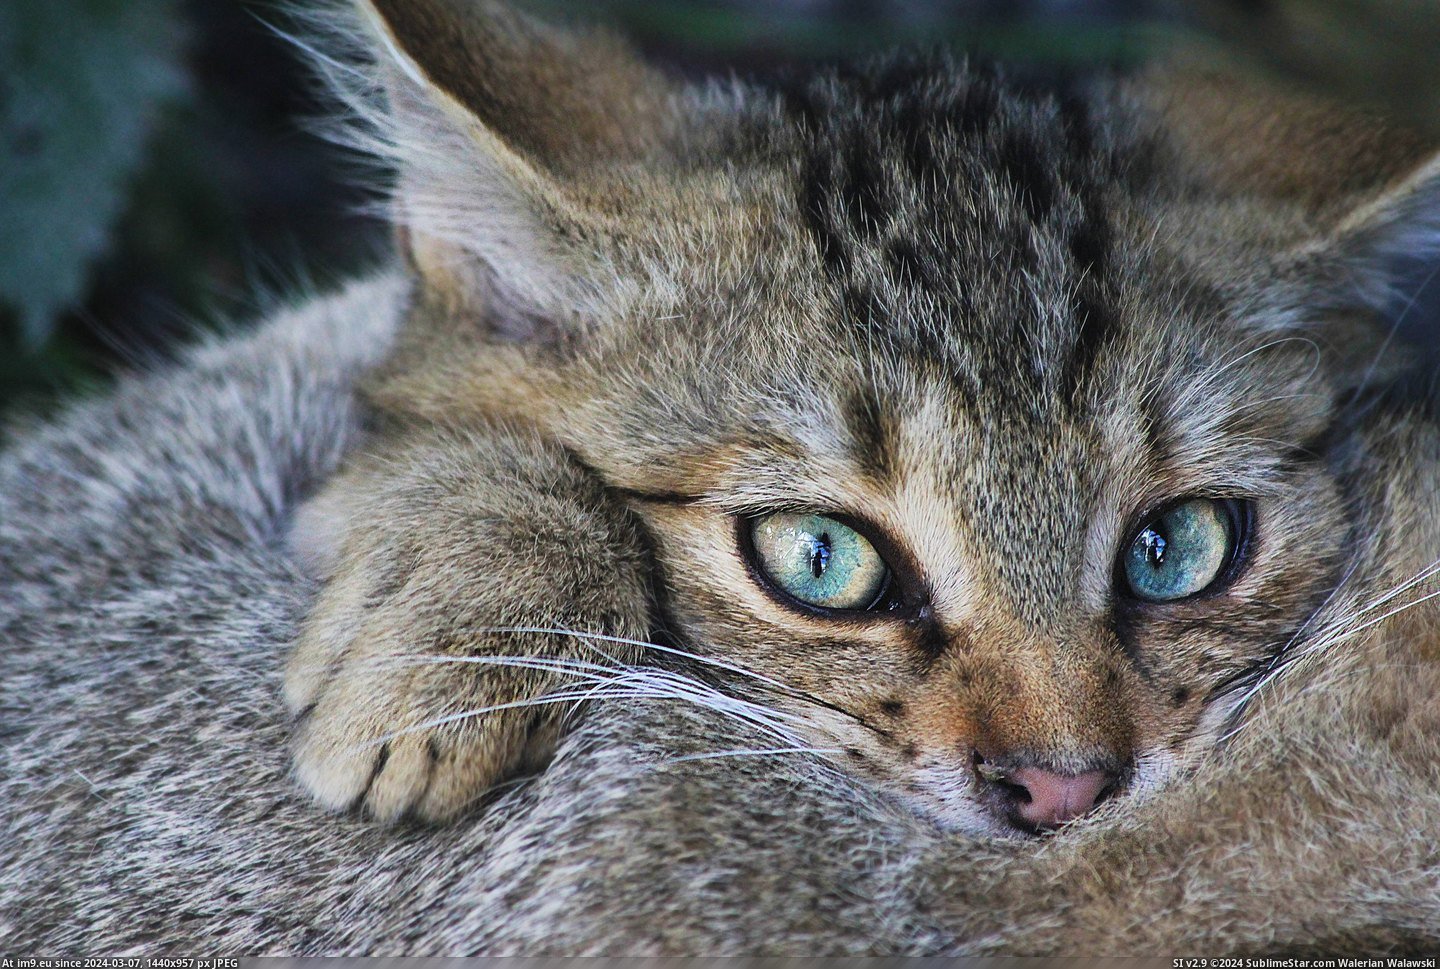 #Cats #Wildcat #Belongs [Cats] Well this is a wildcat, belongs here too?  pics Pic. (Bild von album My r/CATS favs))